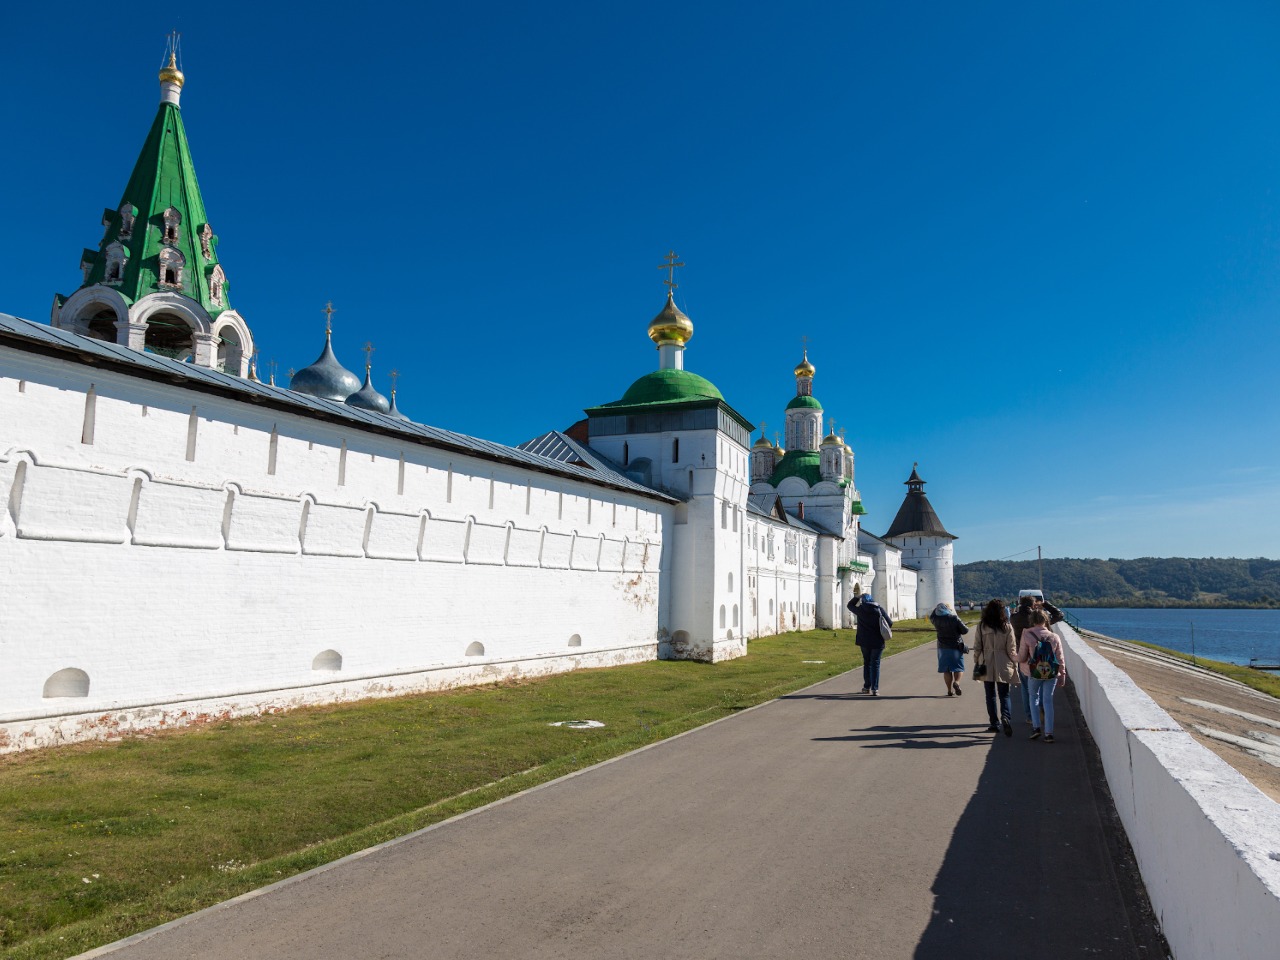 Экоэкскурсия "Макарьевский монастырь" | Цена 14000₽, отзывы, описание экскурсии